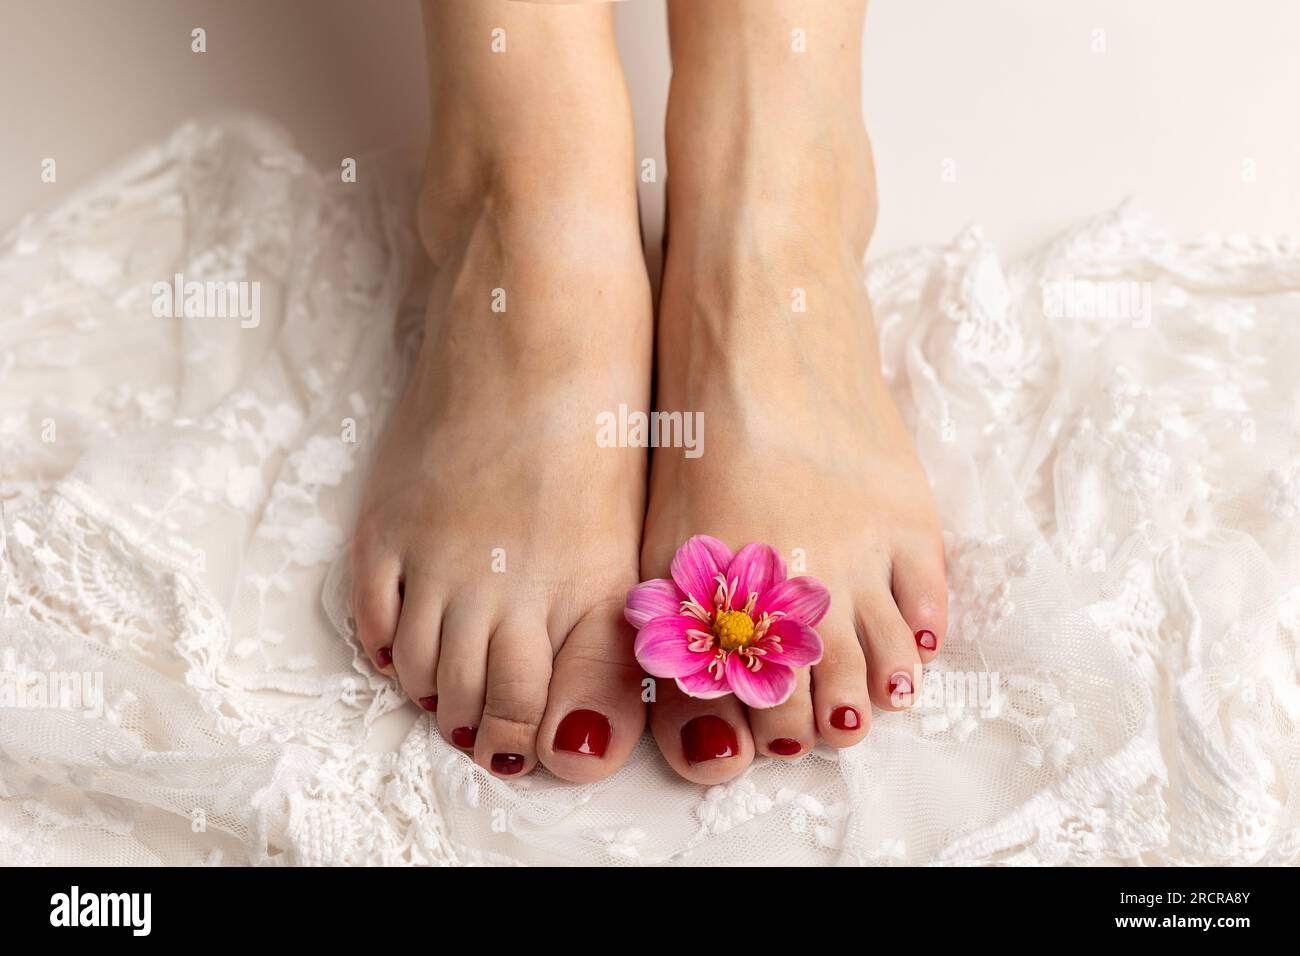 Gros plan de pieds féminins blancs doux avec une belle pédicure rouge sur dentelle blanche, avec une fleur rose sur l'un des pieds Banque D'Images